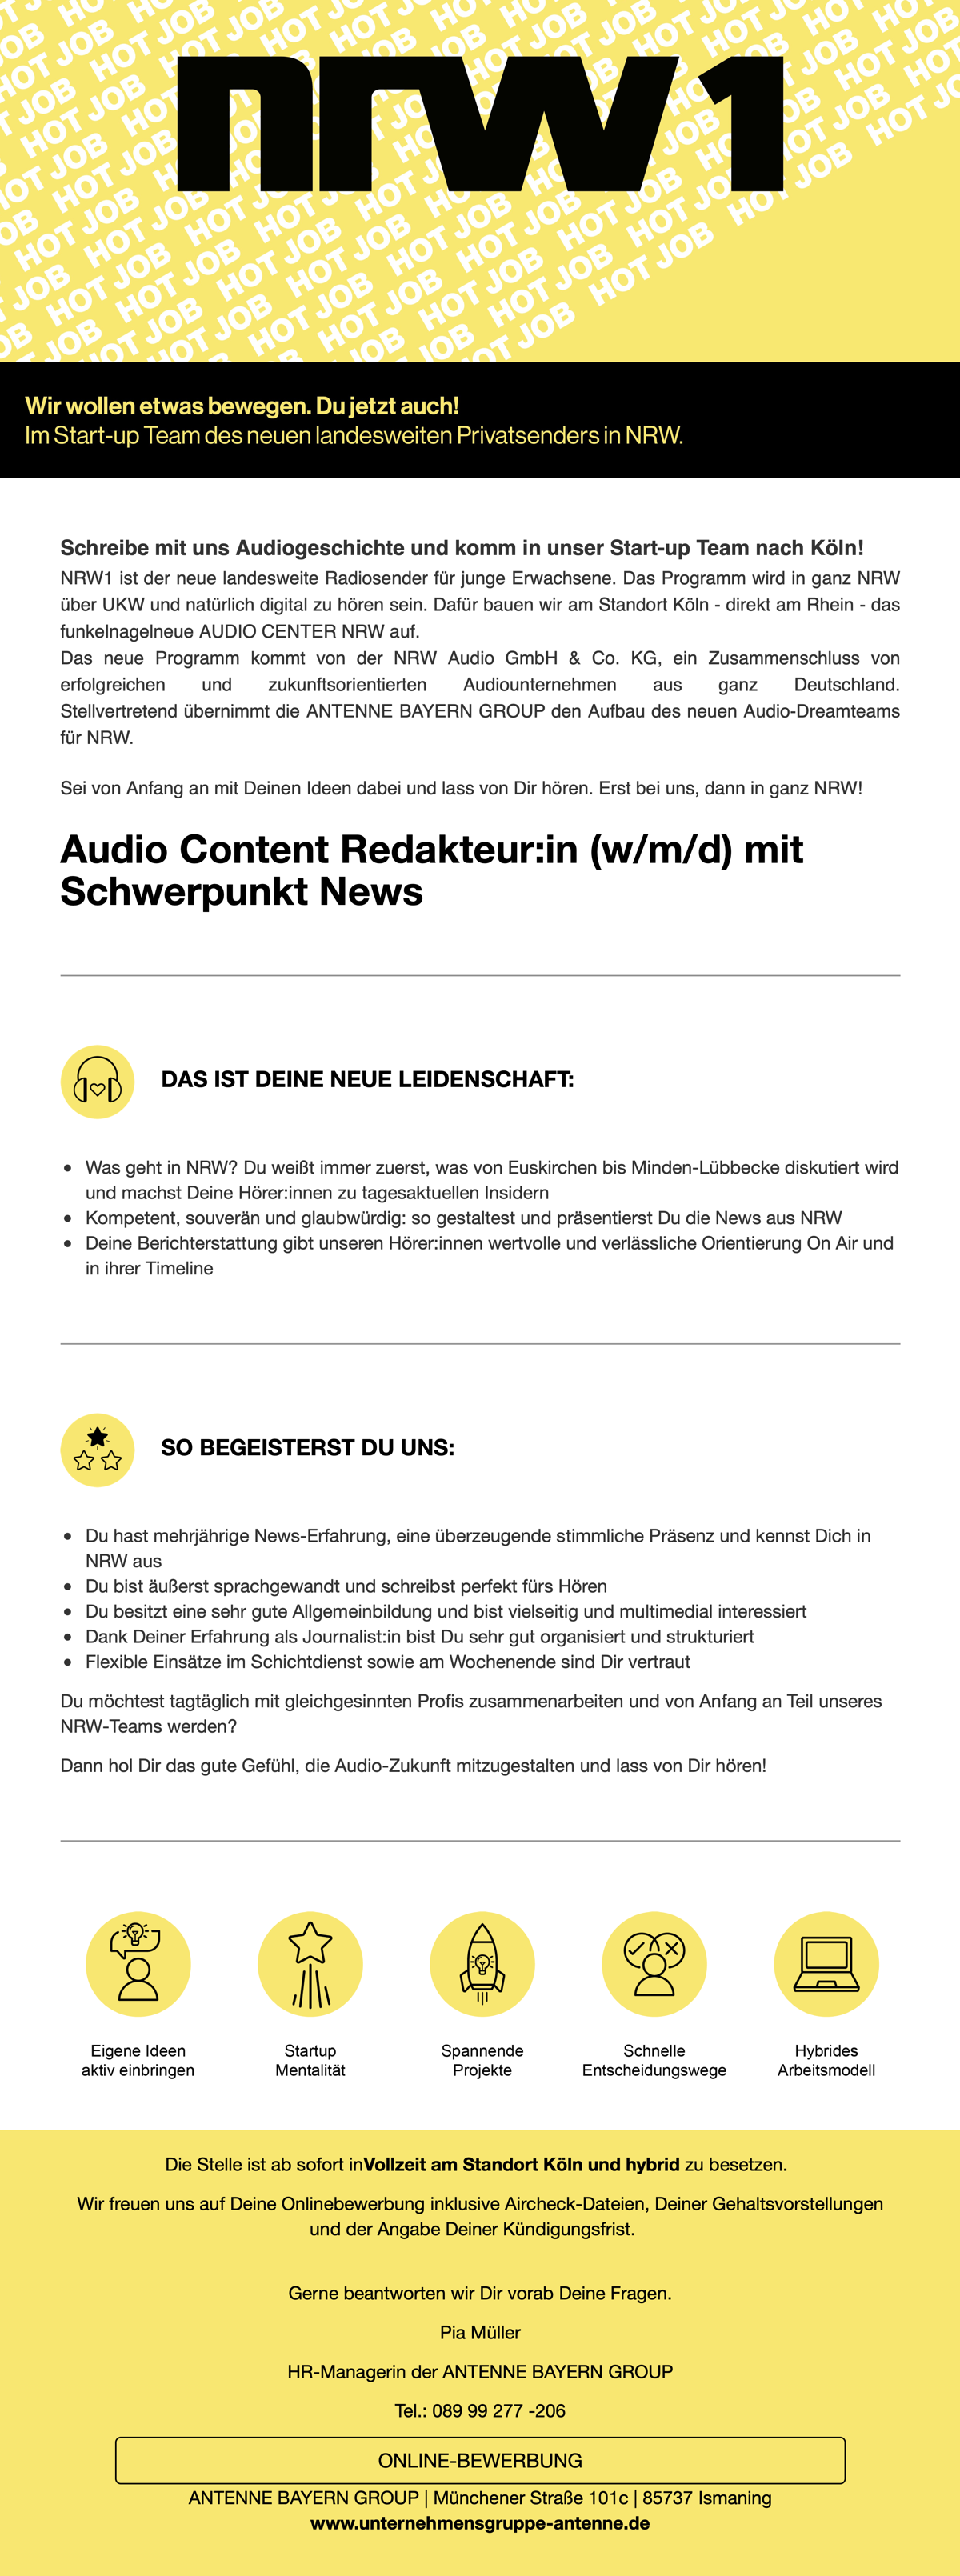 NRW1 sucht Audio Content Redakteur:in (m/w/d) mit Schwerpunkt News